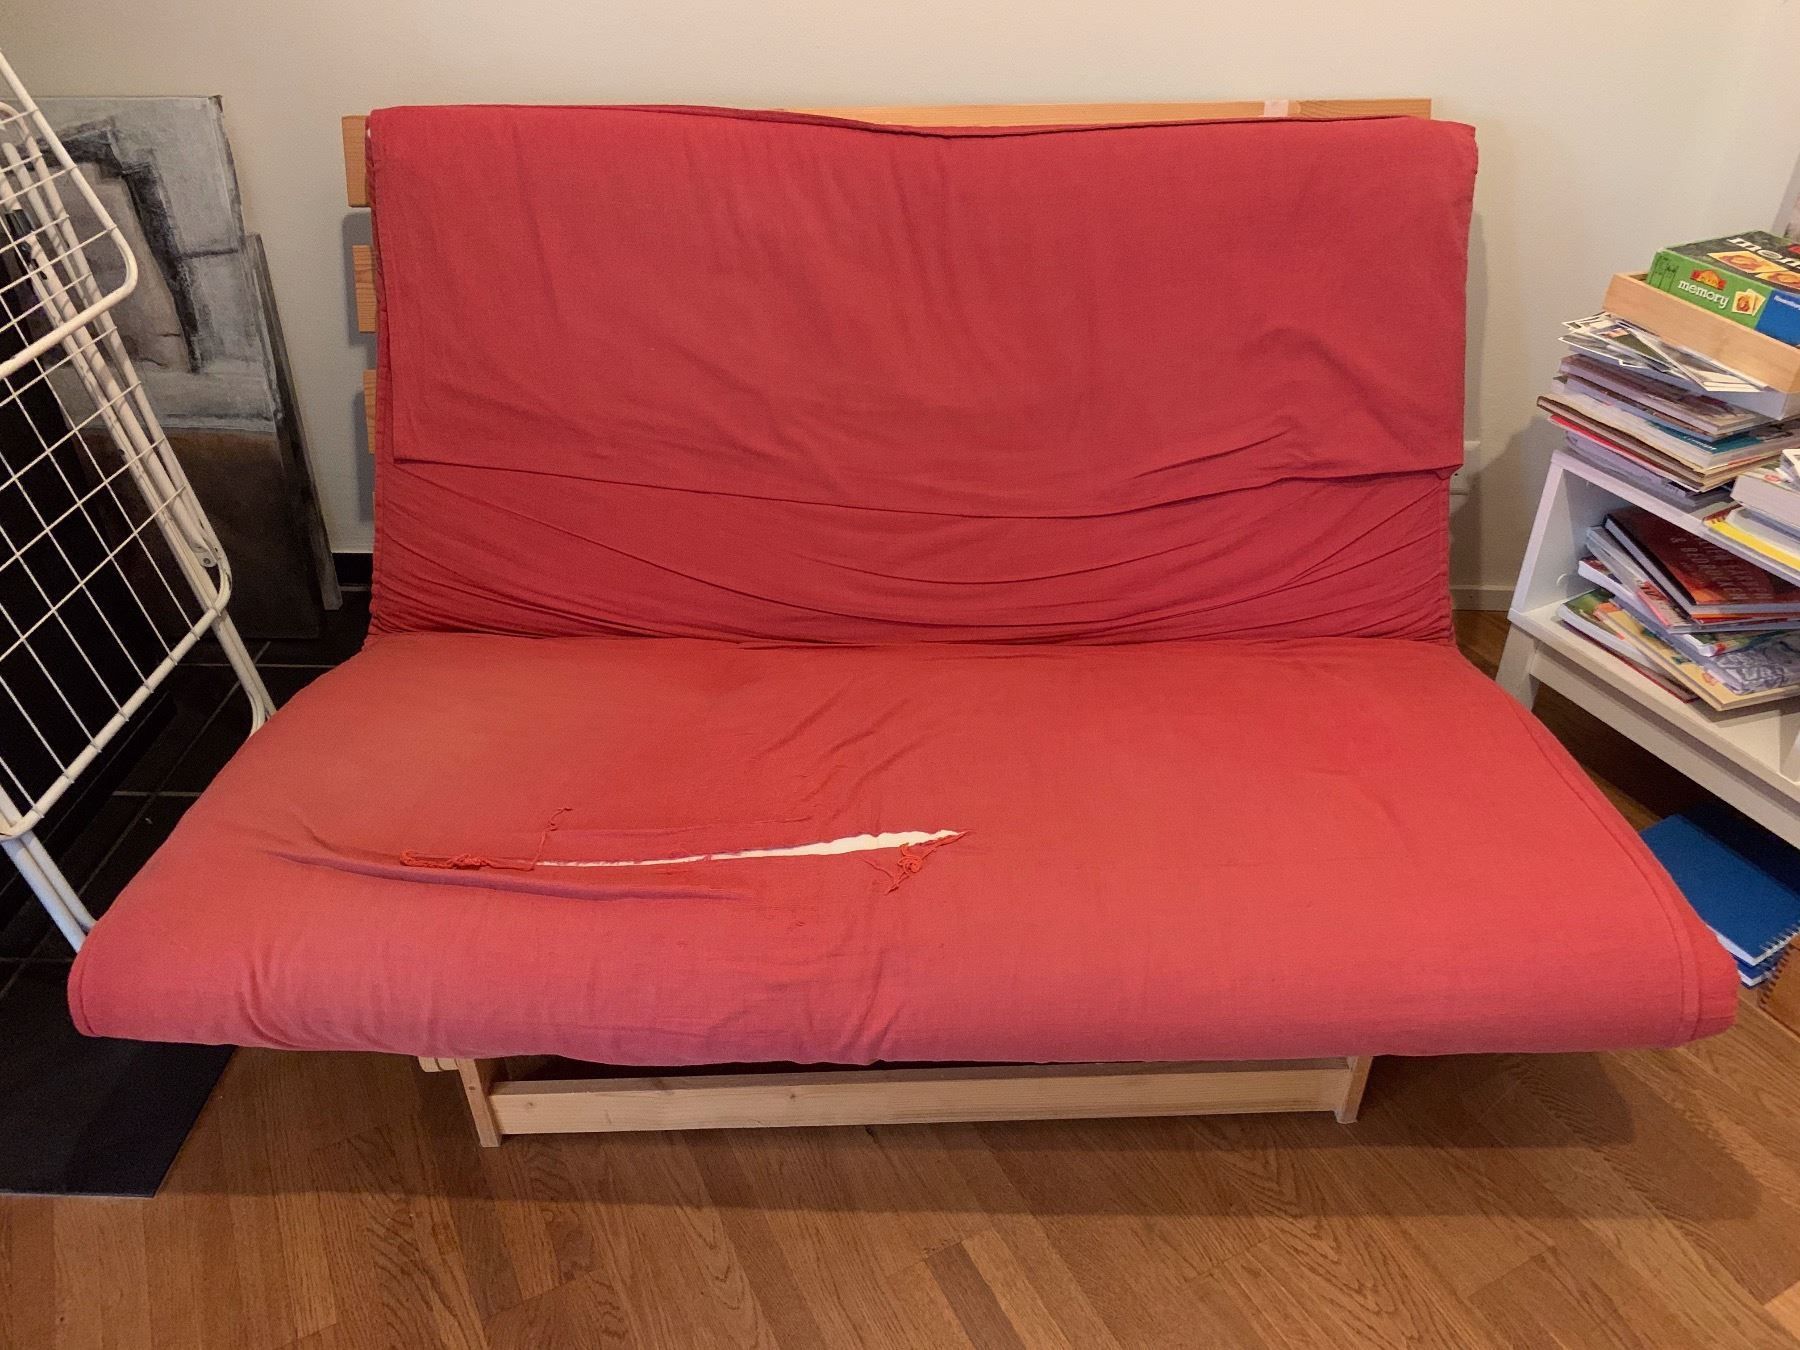 grankulla futon sofa bed